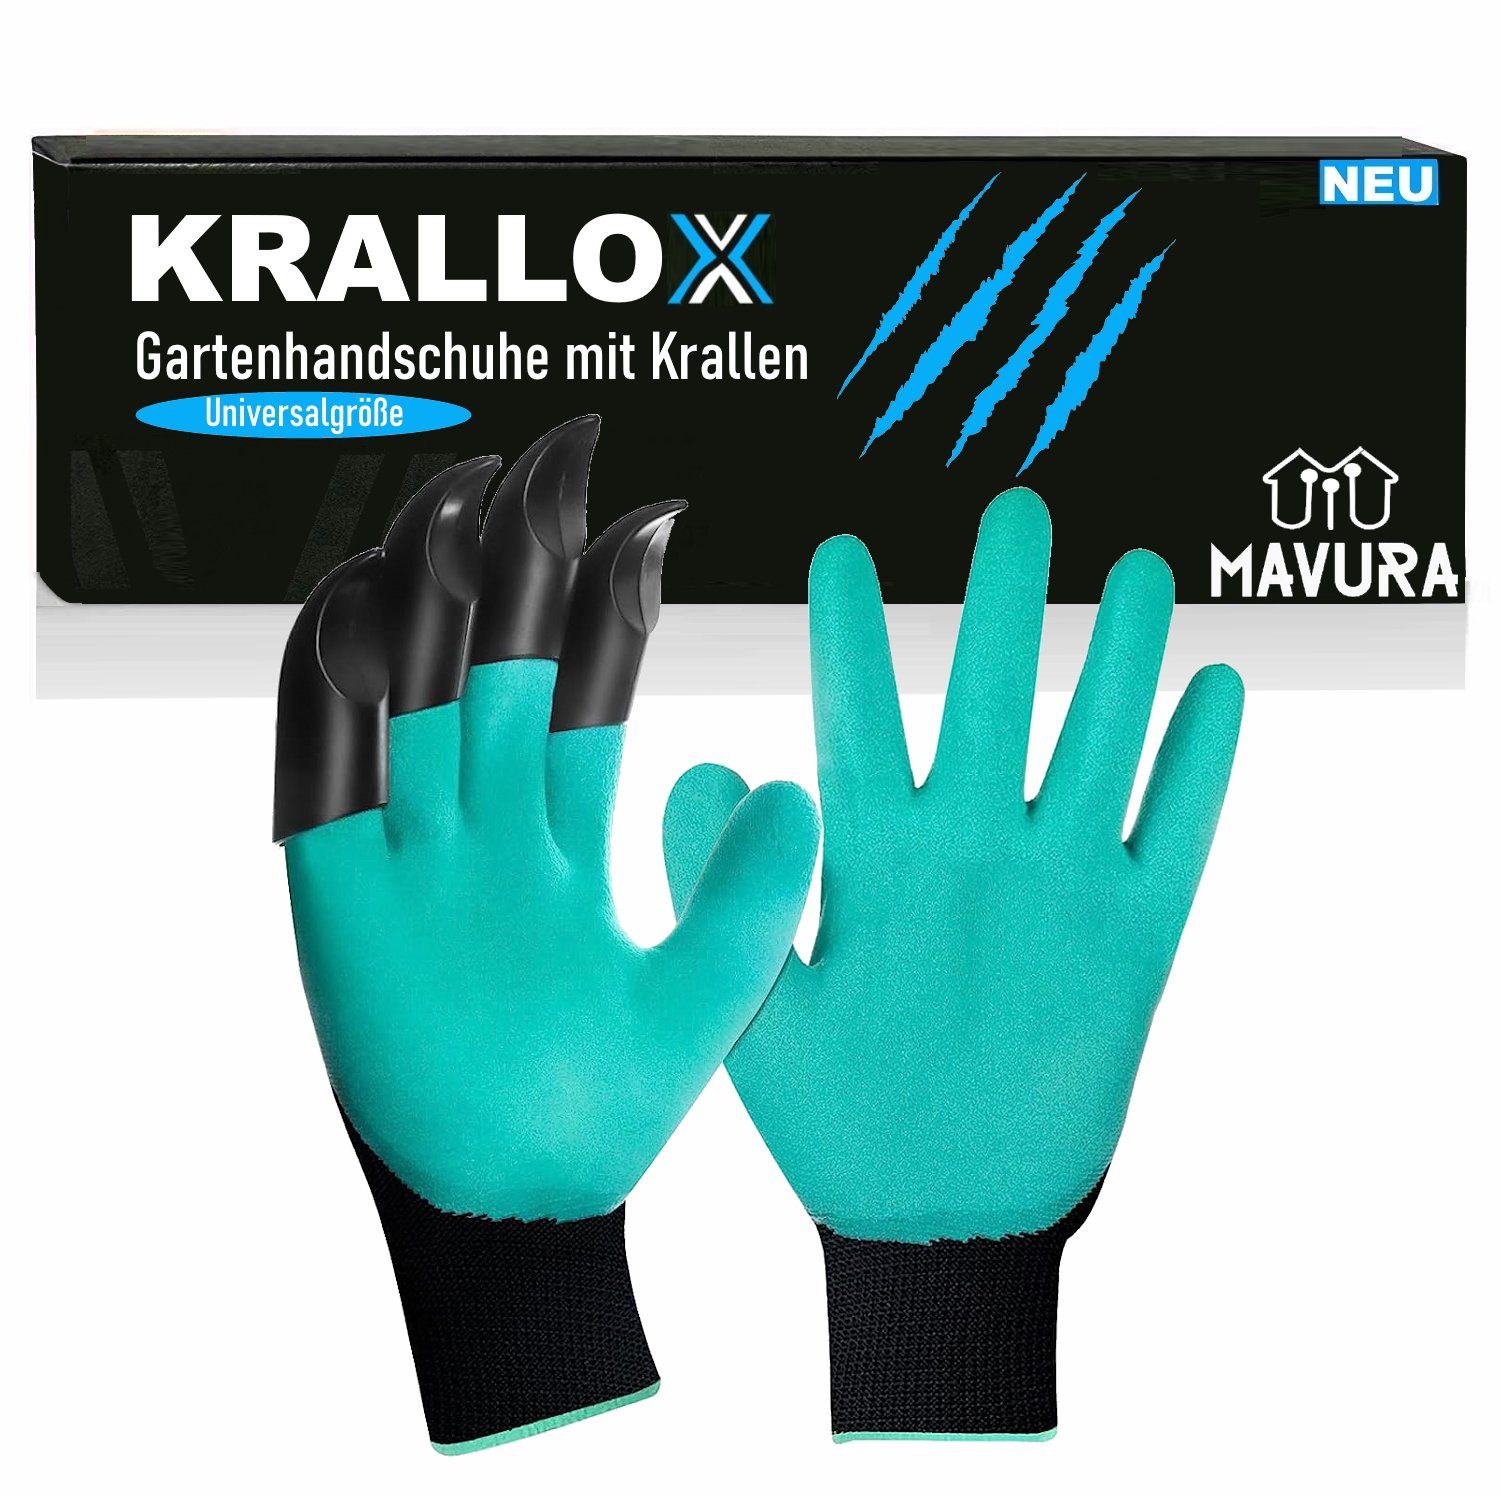 MAVURA Gartenhandschuhe KRALLOX Krallenhandschuhe Garten Handschuhe mit  Krallen zum Graben Universalgröße für Damen & Herren | Gartenhandschuhe